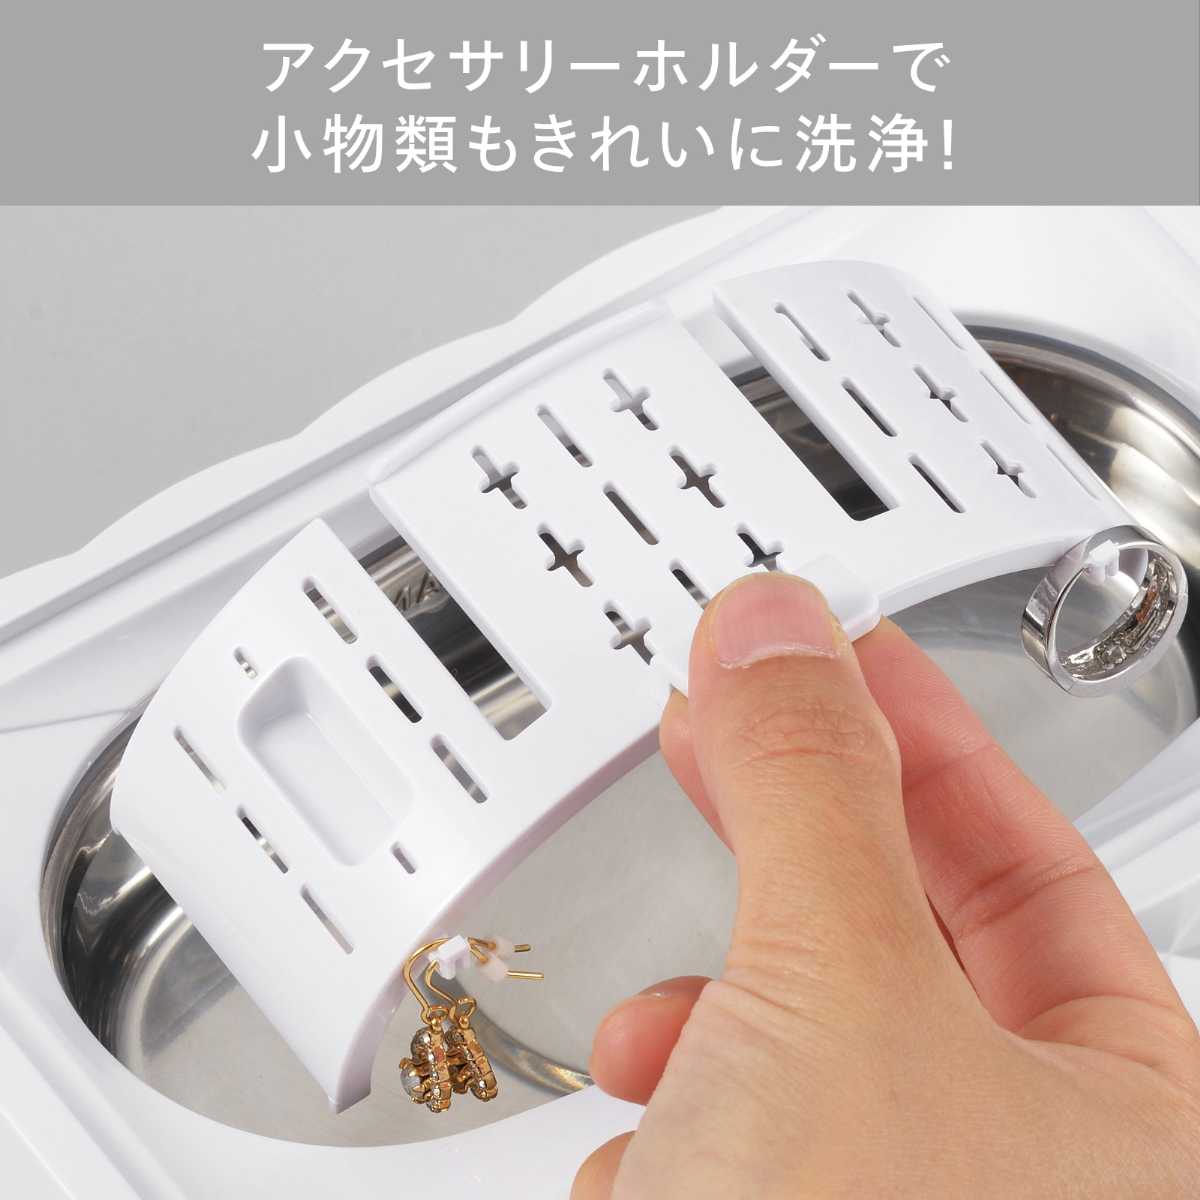 ツインバード 超音波洗浄器 クリーナー メガネ アクセサリー 時計 お手入れ 花粉 洗浄 EC-4548W